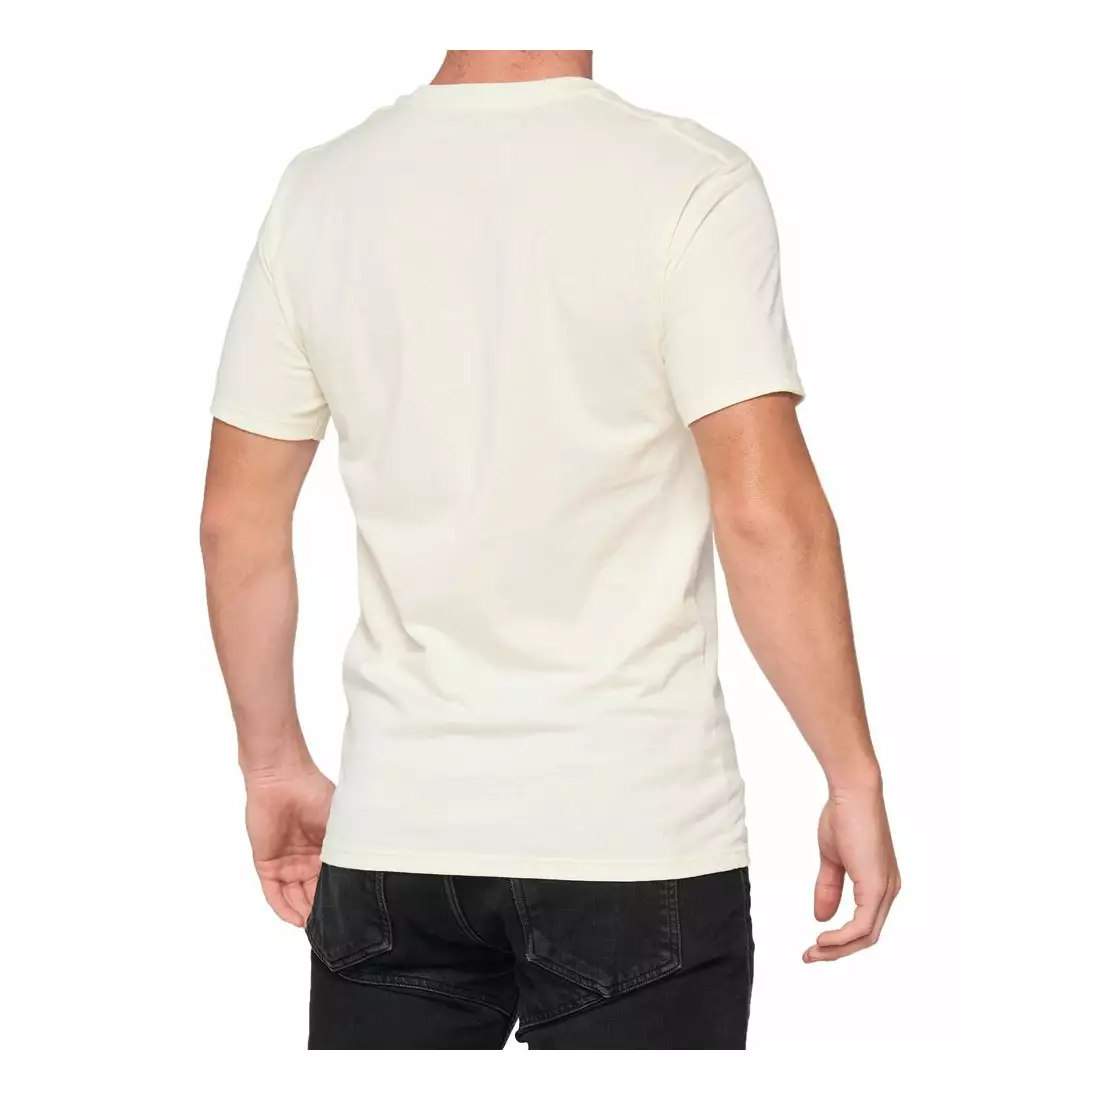 100% pánské sportovní tričko s krátkým rukávem ESSENTIAL chalk orange STO-32016-461-13